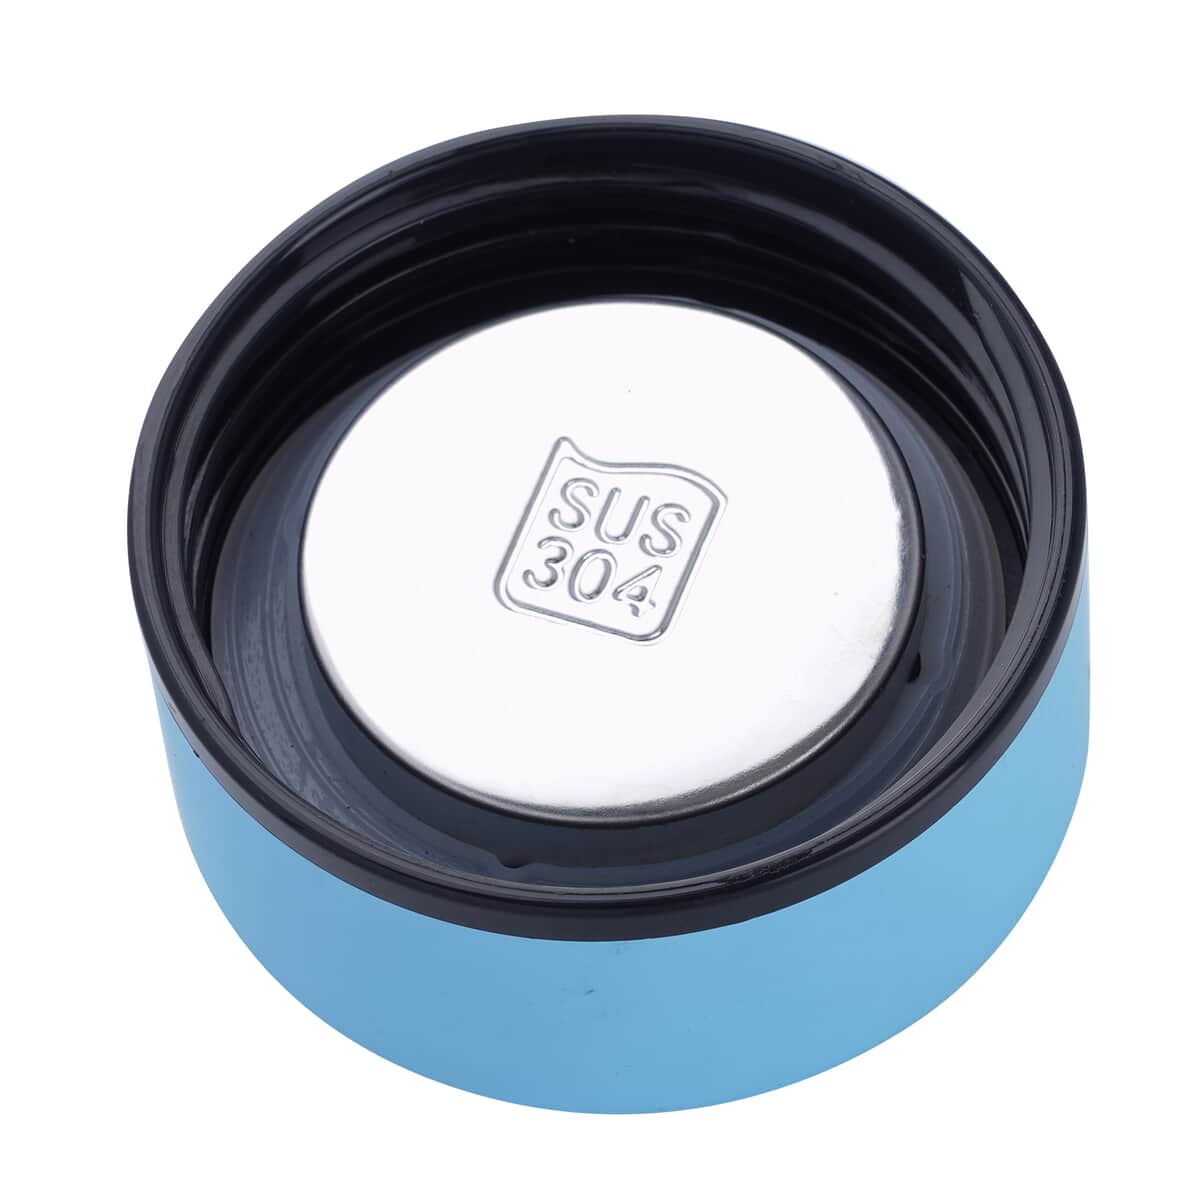 Elite Shungite Filter Infuser and Temperature Sensor Smart Water Bottle (LED Display, Long Filter) - Blue image number 1